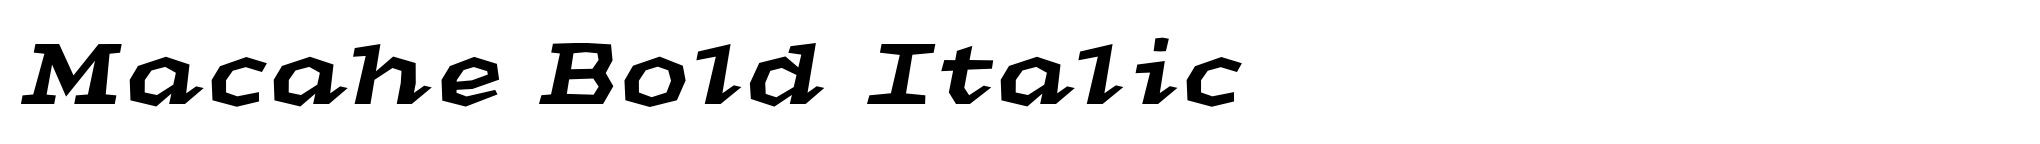 Macahe Bold Italic image